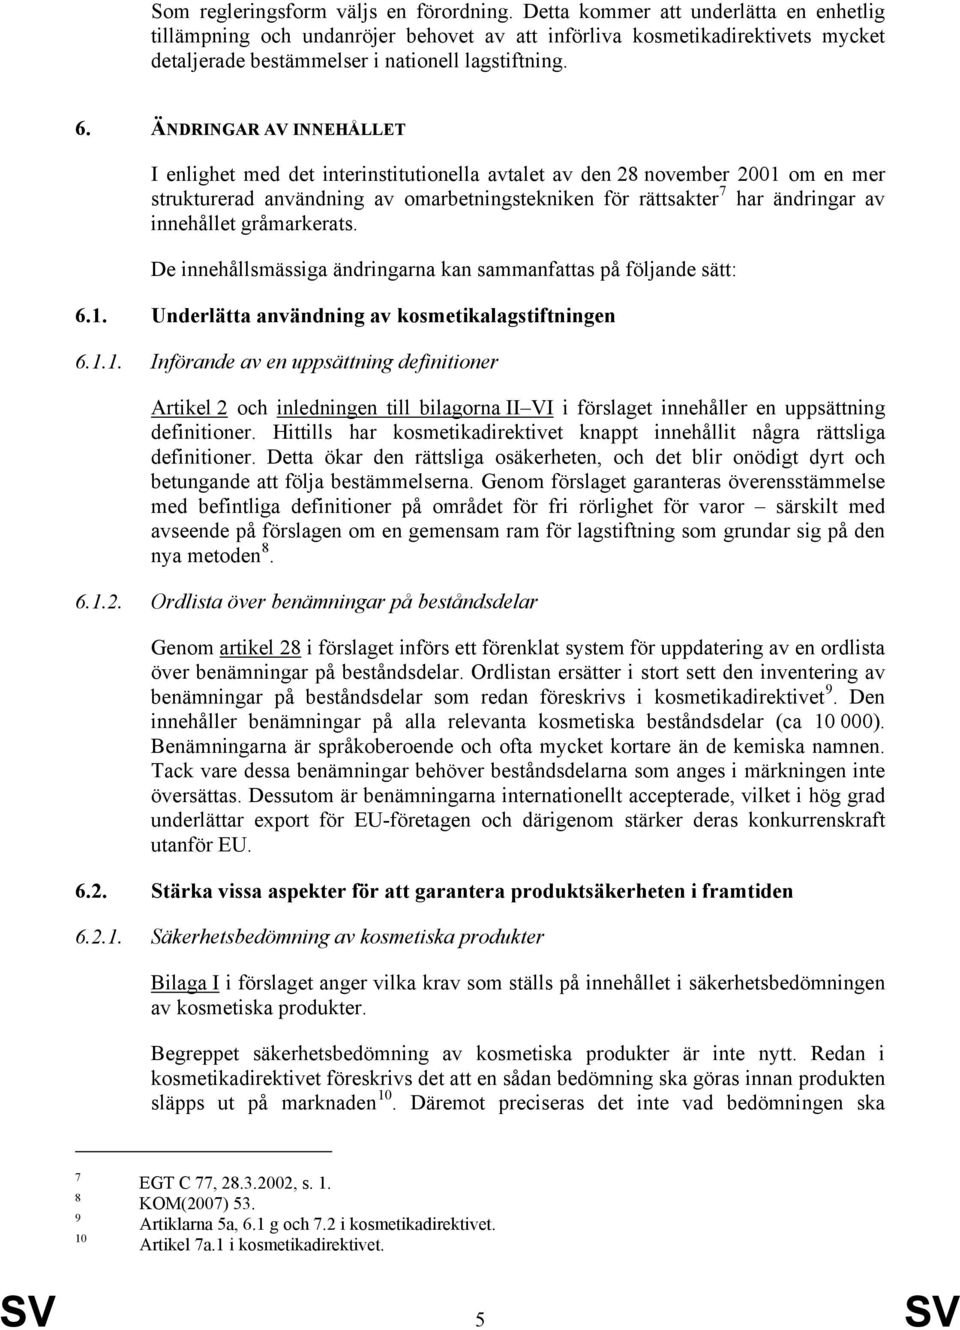 ÄNDRINGAR AV INNEHÅLLET I enlighet med det interinstitutionella avtalet av den 28 november 2001 om en mer strukturerad användning av omarbetningstekniken för rättsakter 7 har ändringar av innehållet